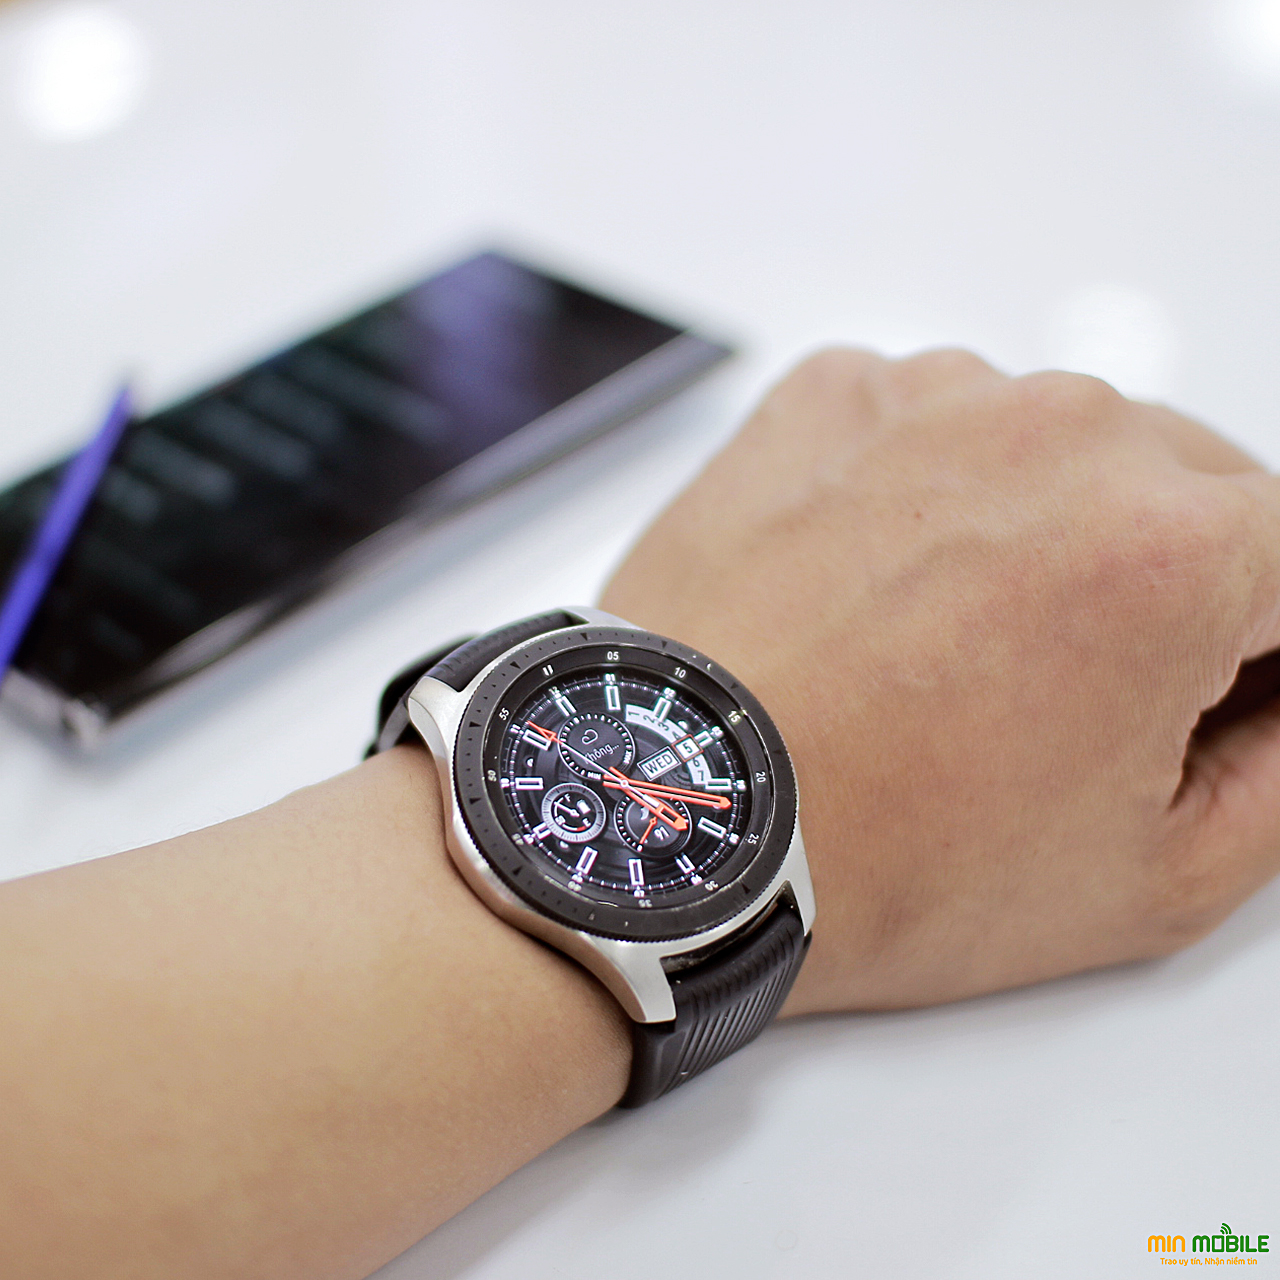 Giá Galaxy Watch đang được ưu đãi chỉ: 3.990k tại MinMobile Hải Phòng